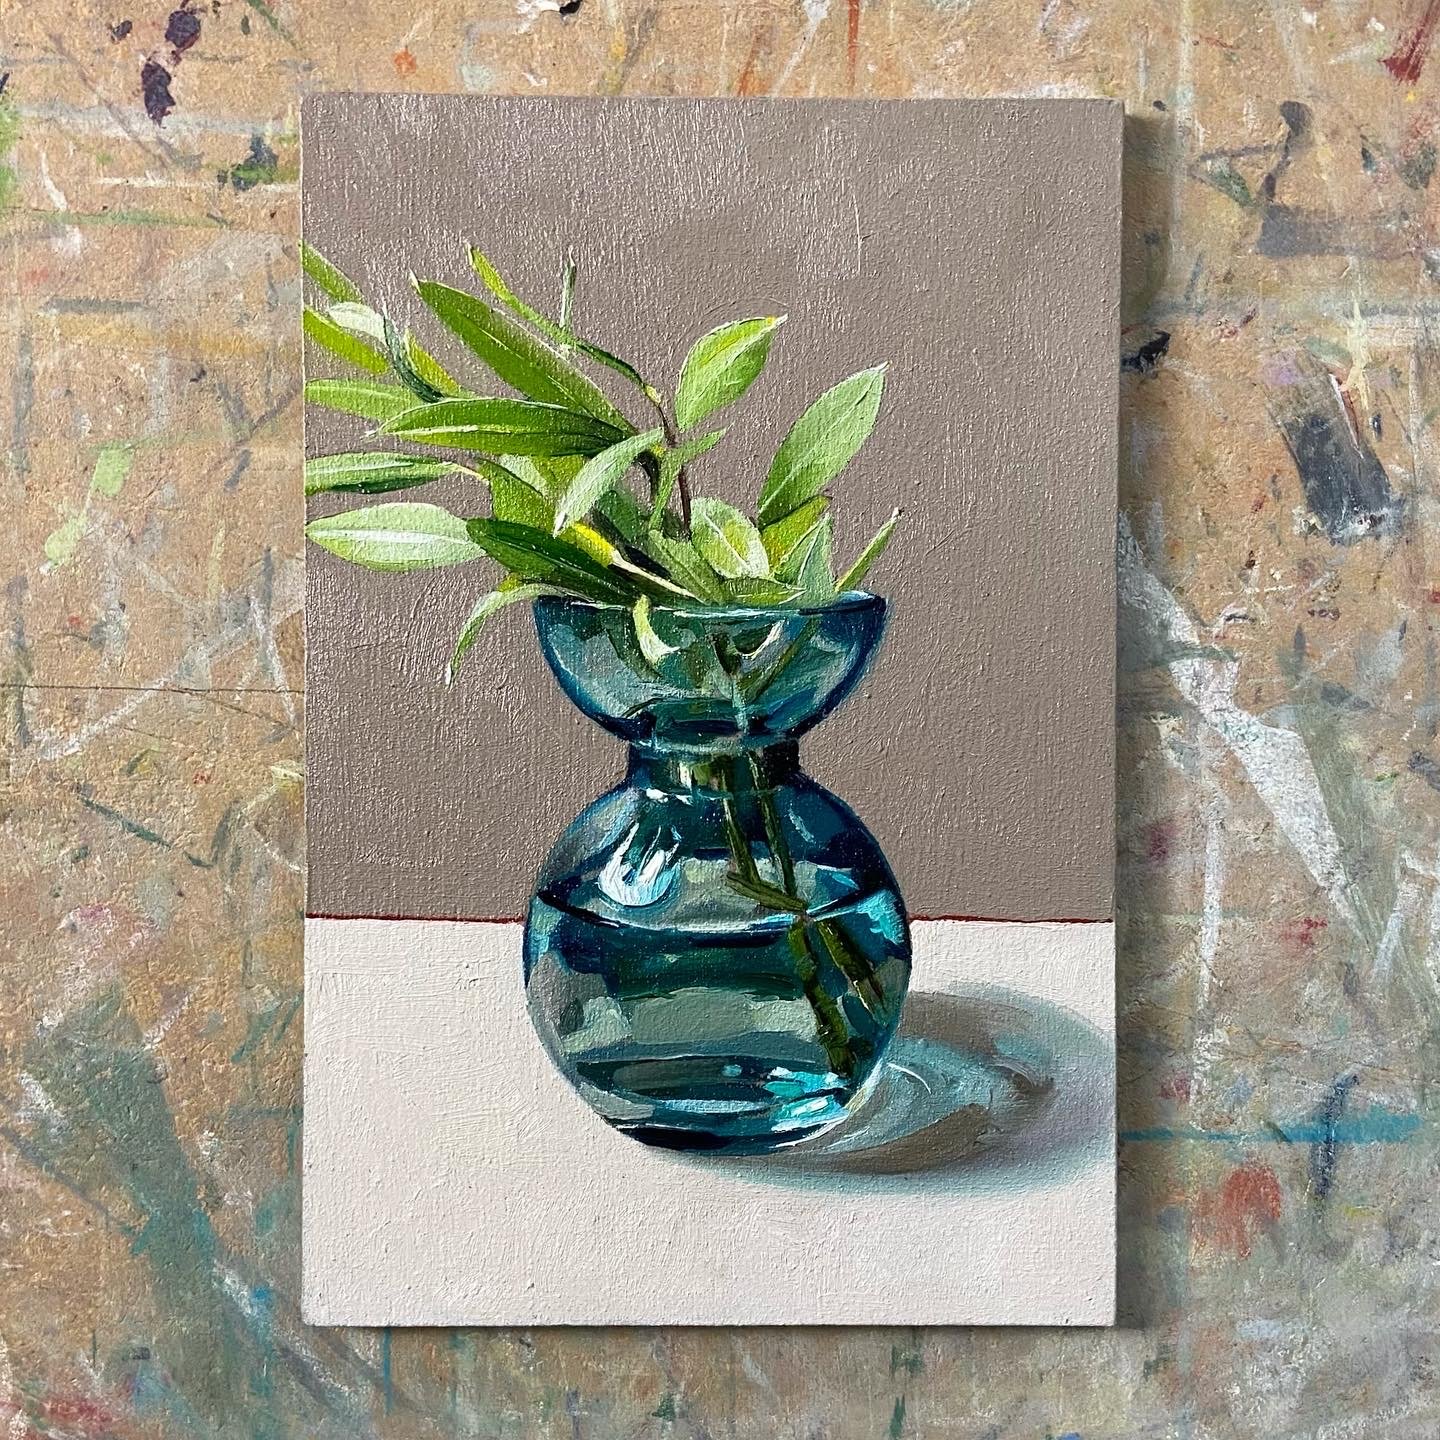 Blue vase with olive sprig